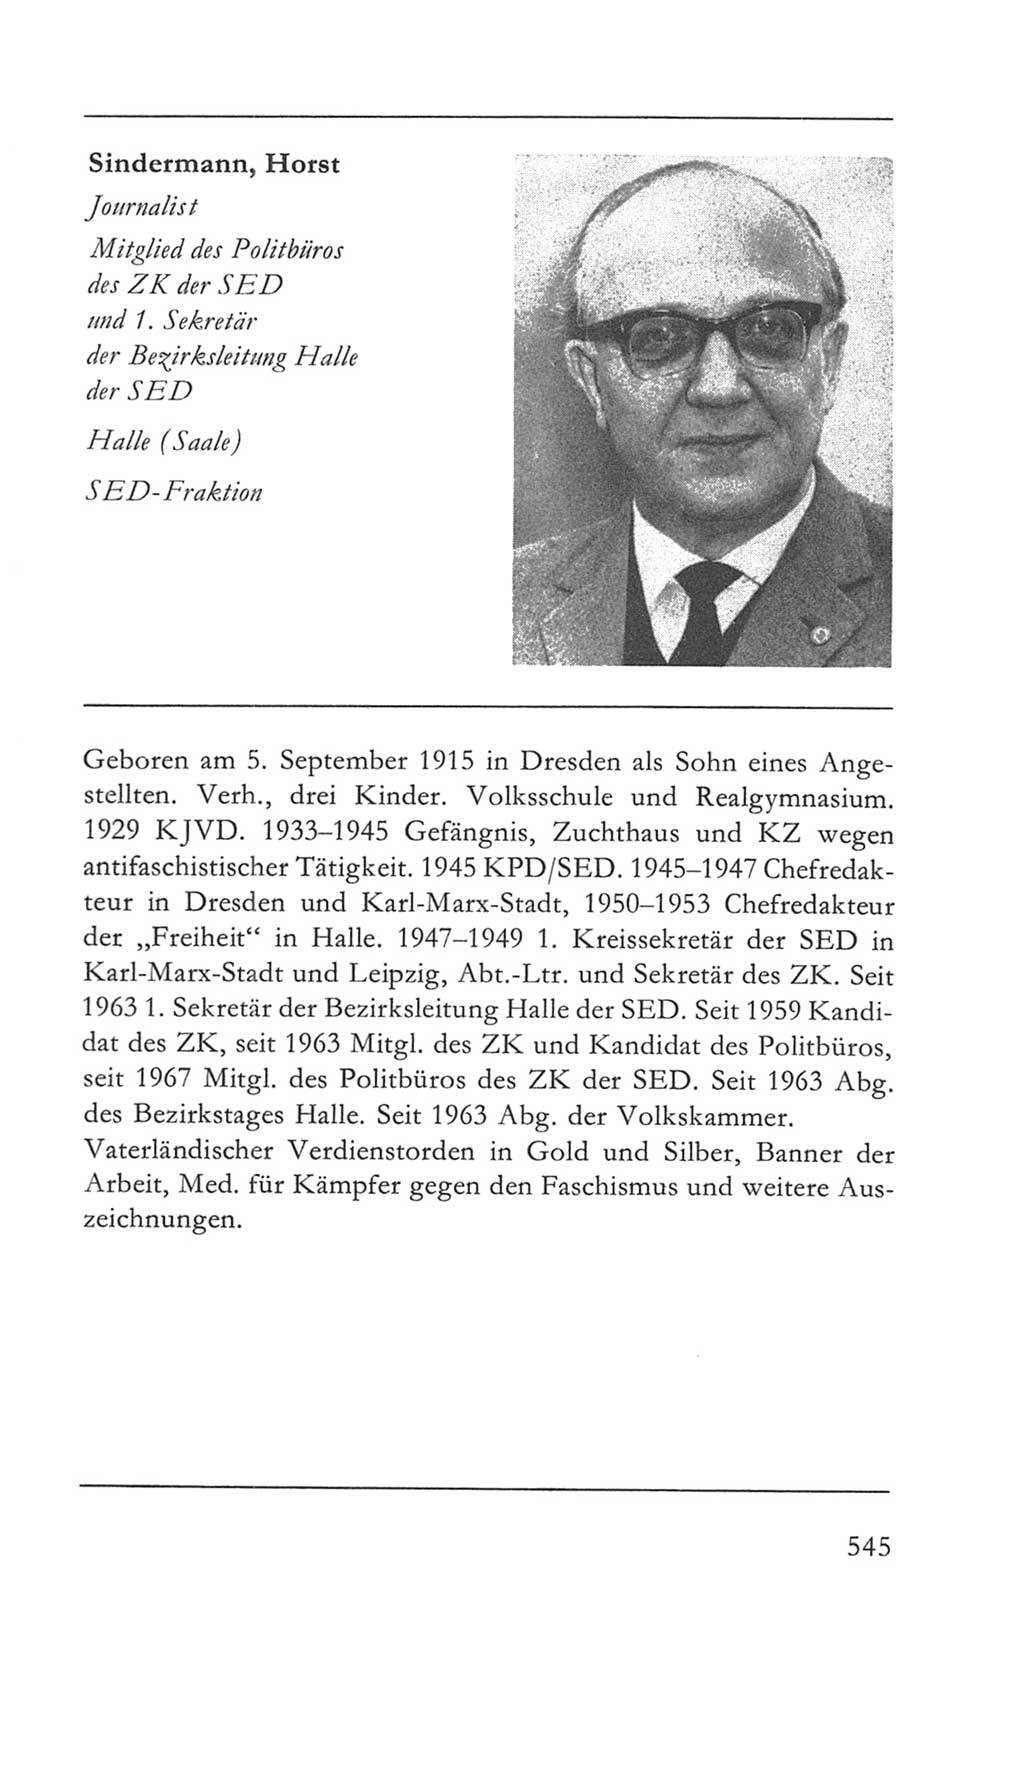 Volkskammer (VK) der Deutschen Demokratischen Republik (DDR) 5. Wahlperiode 1967-1971, Seite 545 (VK. DDR 5. WP. 1967-1971, S. 545)